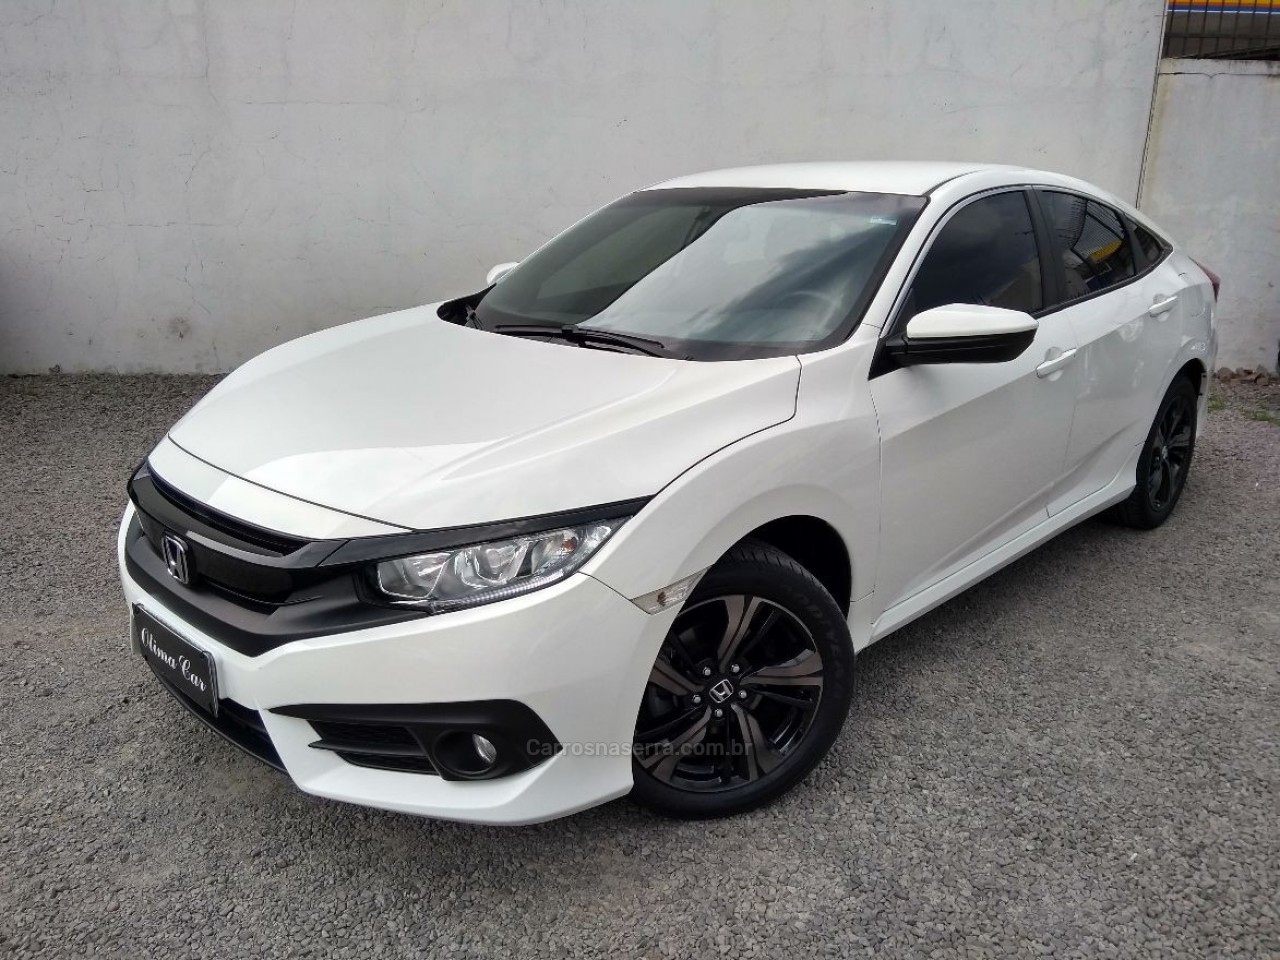 HONDA CIVIC 2020/2020 Branco R 99.900,00 Ótima Car